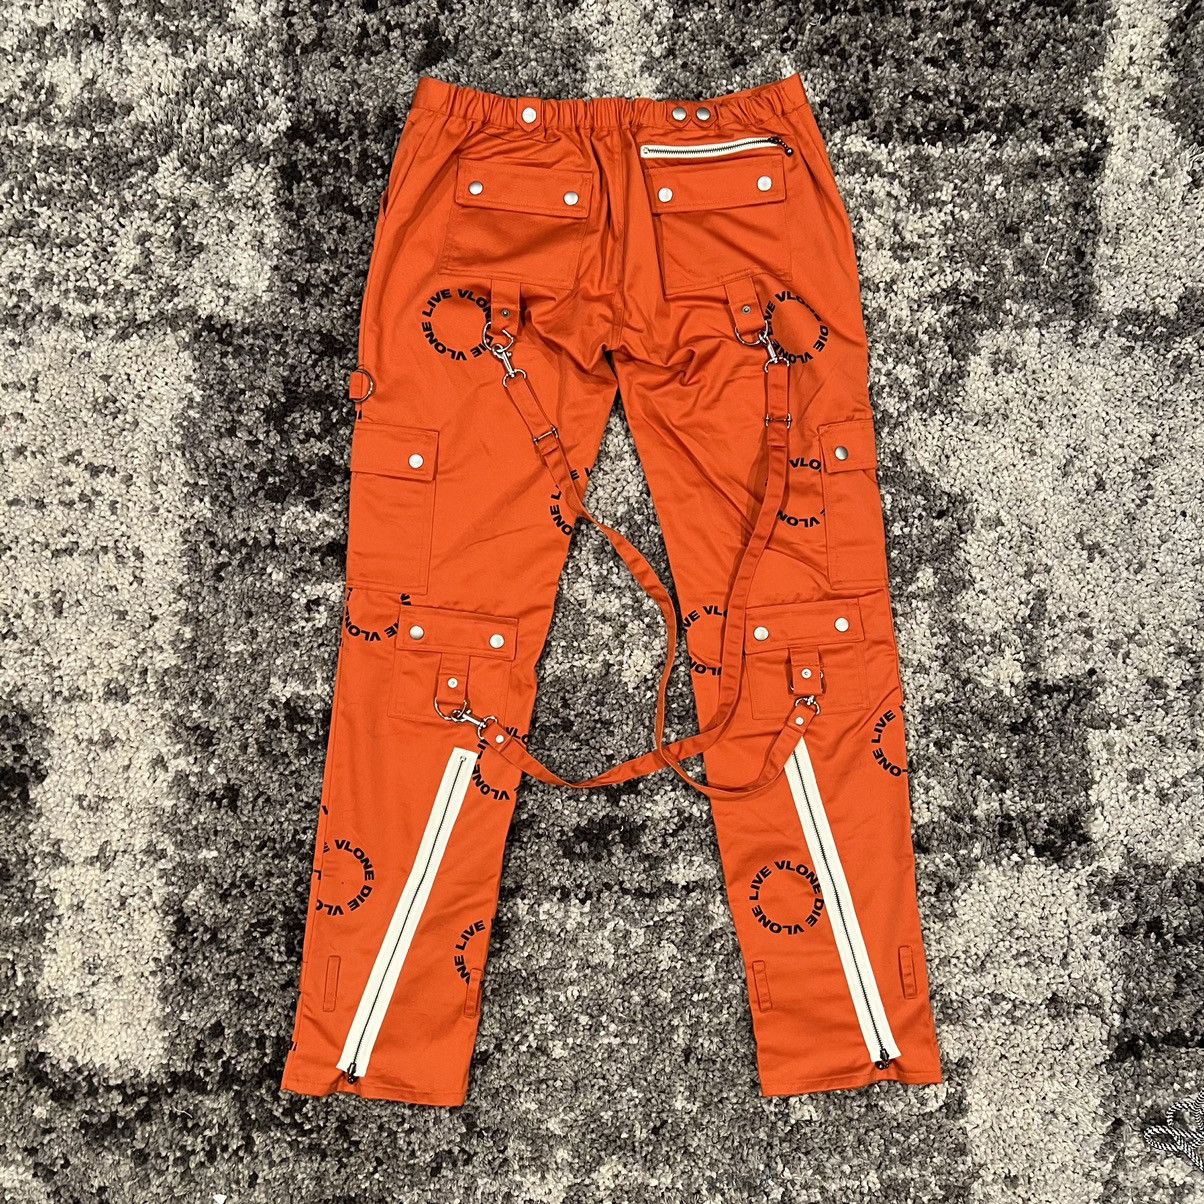 Vlone Vlone Orange With Black Logo Bondage Pants XL Size US 36 / EU 52 - 2 Preview